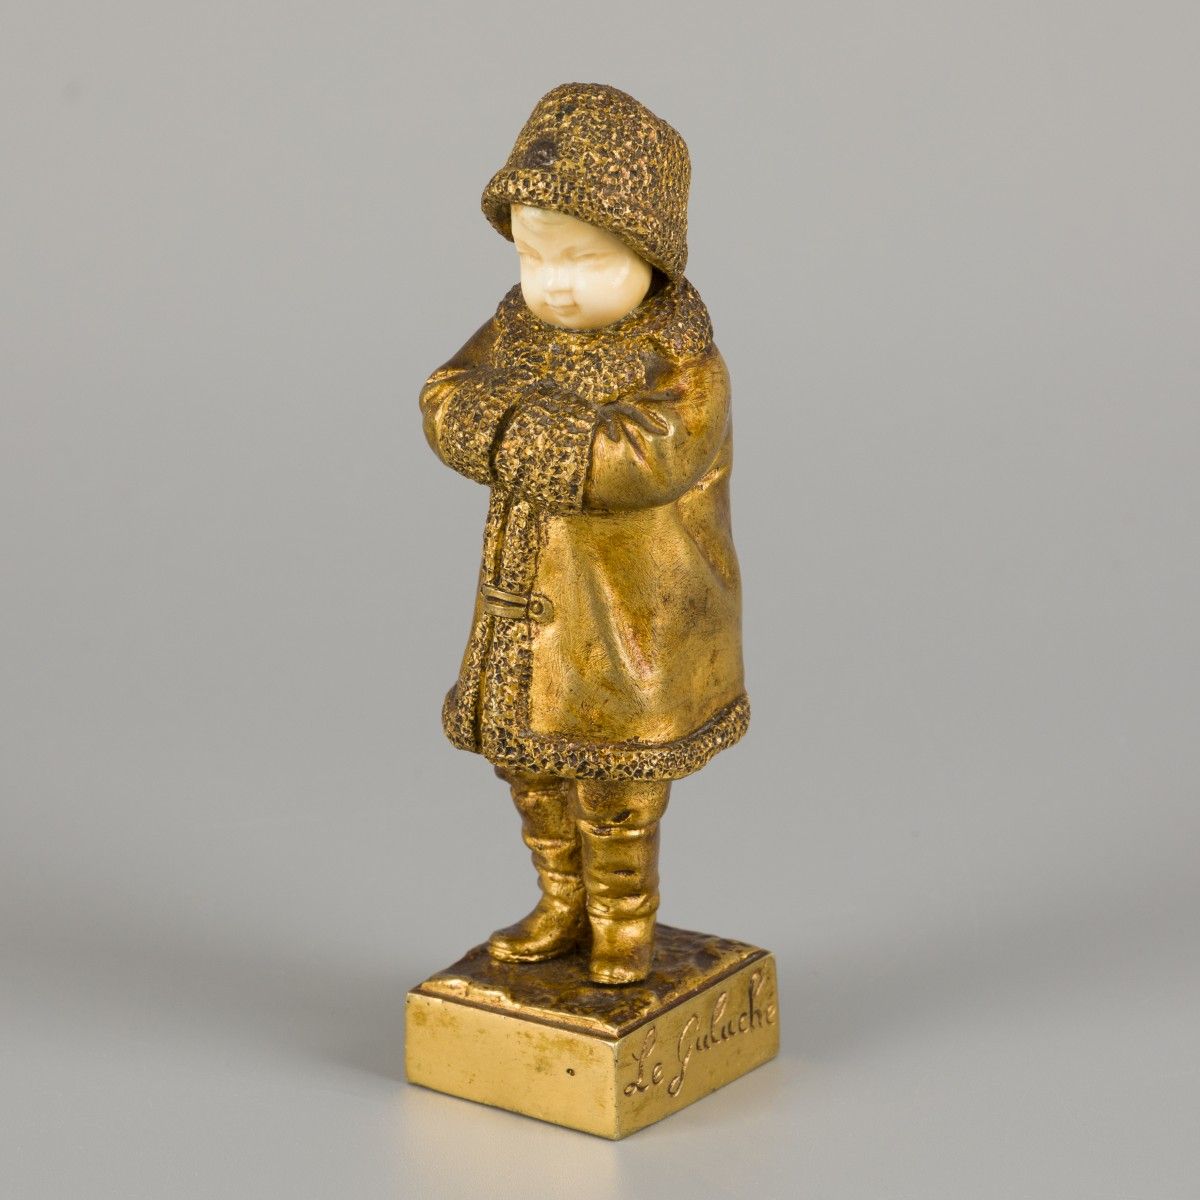 Joseph de Guluche (Plourivo (Côtes-d'Armor) 1849 - 1915 Villejuif), a bronze sta&hellip;